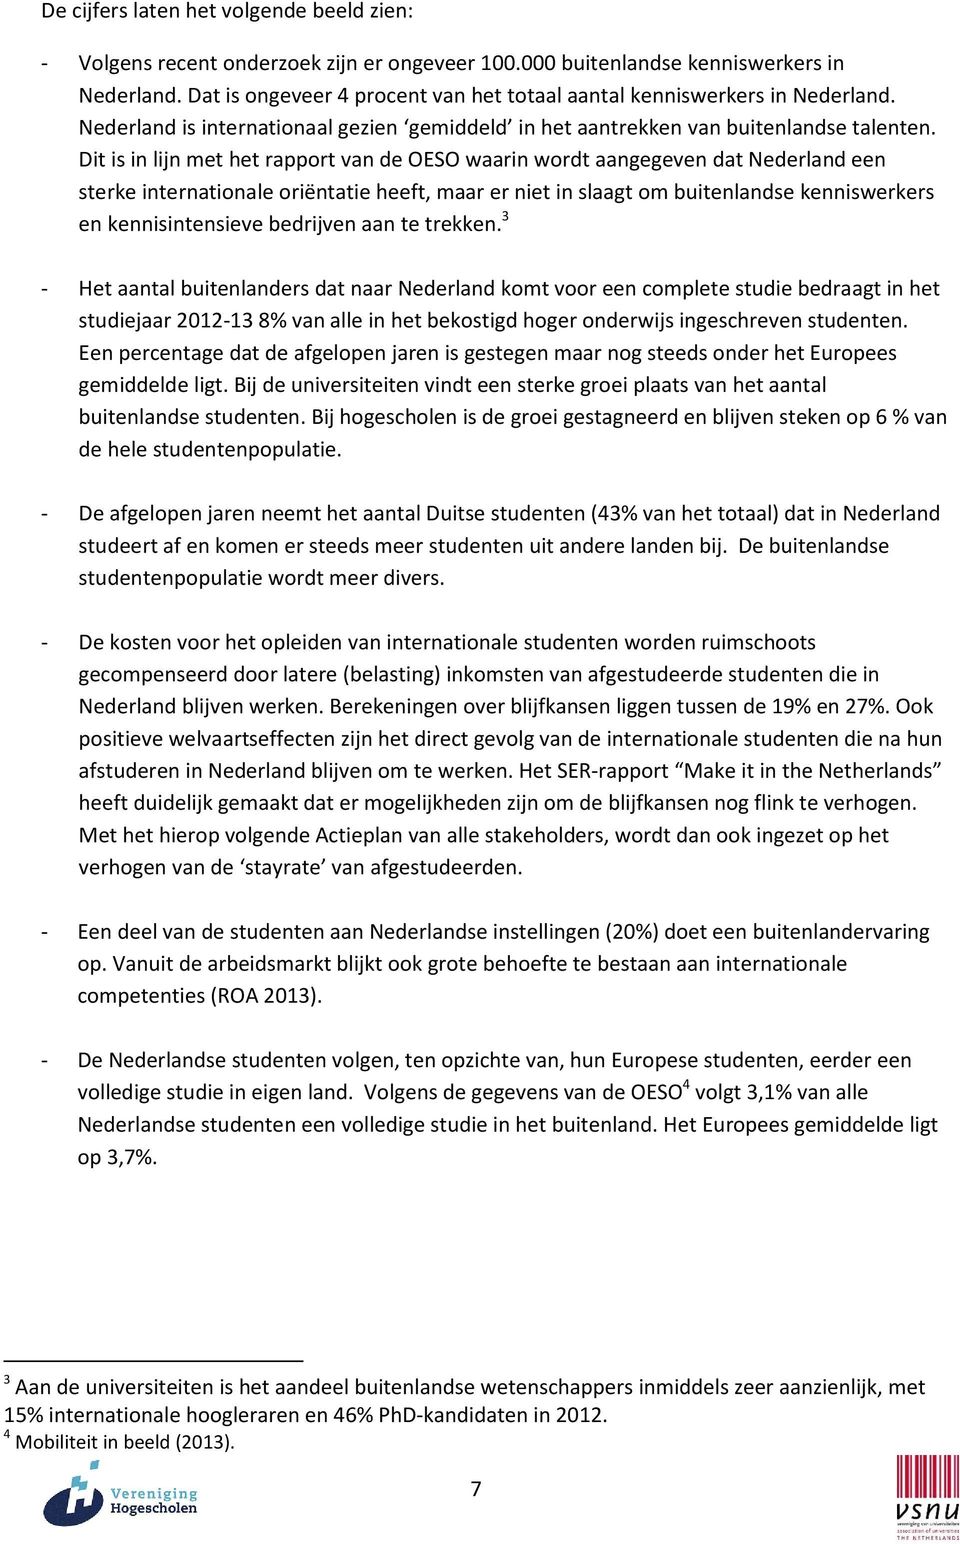 Dit is in lijn met het rapport van de OESO waarin wordt aangegeven dat Nederland een sterke internationale oriëntatie heeft, maar er niet in slaagt om buitenlandse kenniswerkers en kennisintensieve